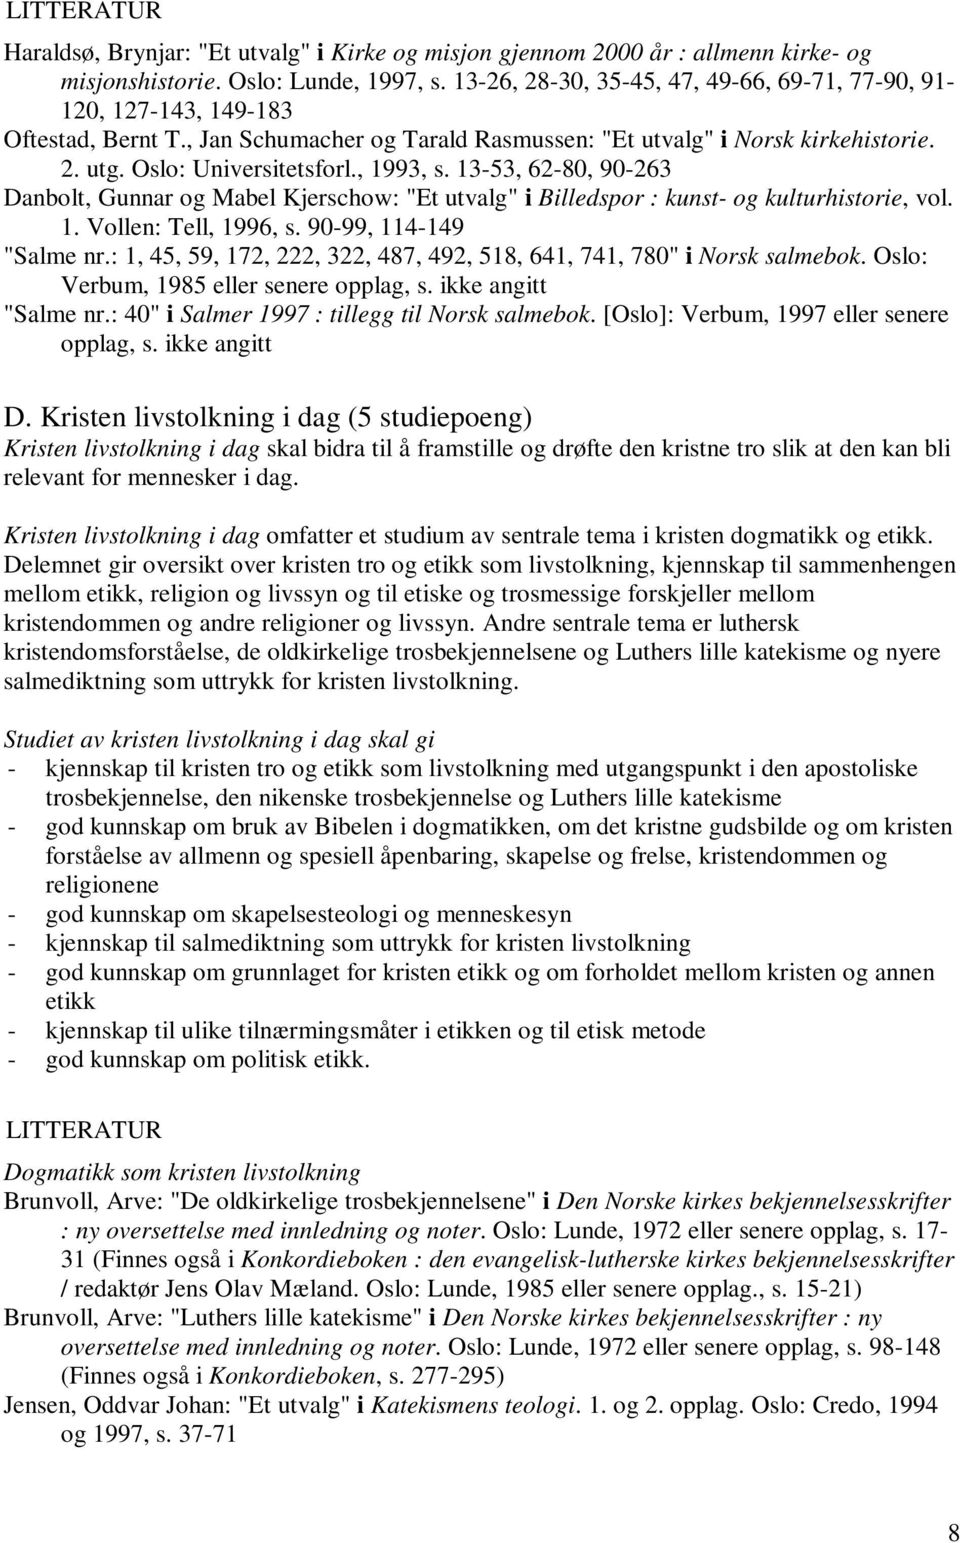 , 1993, s. 13-53, 62-80, 90-263 Danbolt, Gunnar og Mabel Kjerschow: "Et utvalg" i Billedspor : kunst- og kulturhistorie, vol. 1. Vollen: Tell, 1996, s. 90-99, 114-149 "Salme nr.